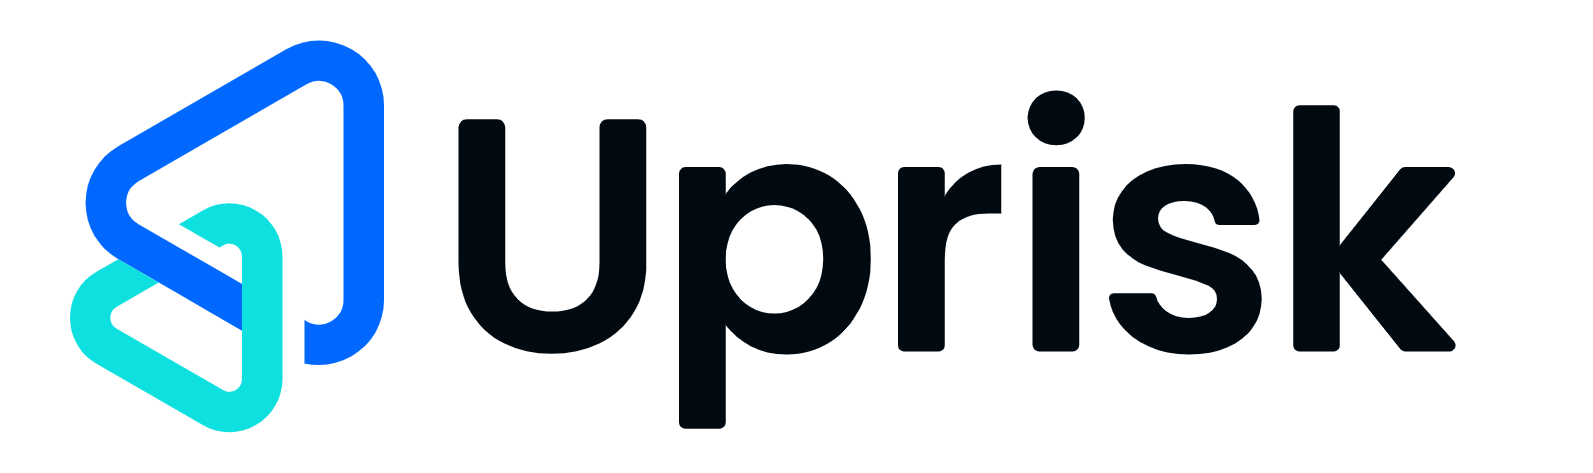 Uprisk_Logo_Final-site.png